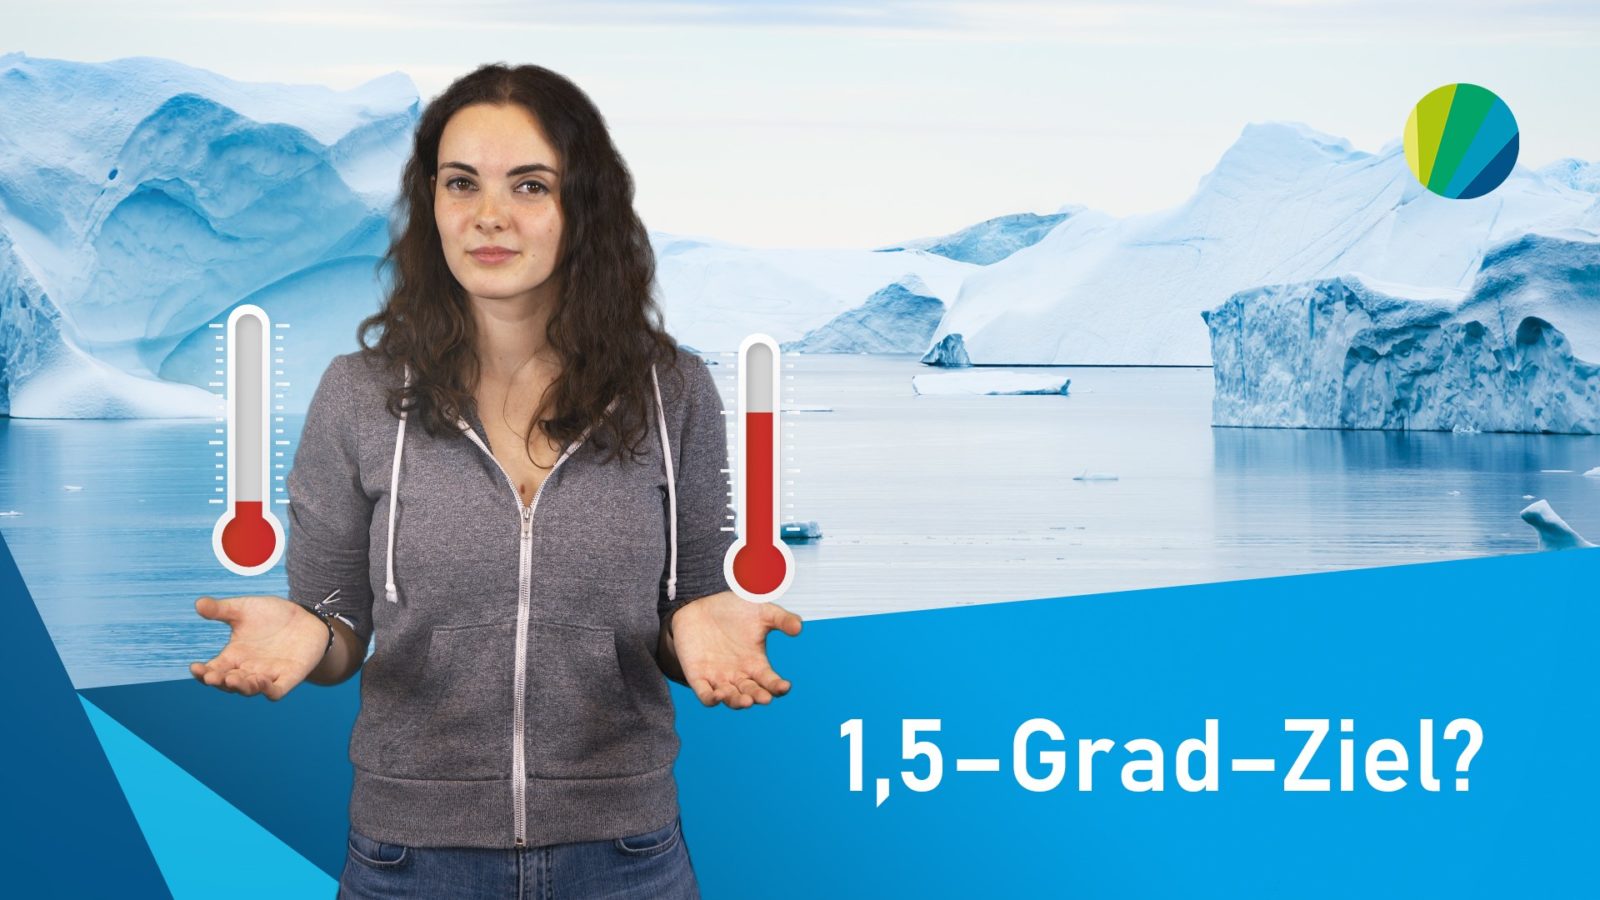 Standbild aus Video: junge Moderatorin mit animierten Thermometern über den geöffneten Händen vor Bild vonGletschern mit Titel: 1,5-Grad-Ziel?